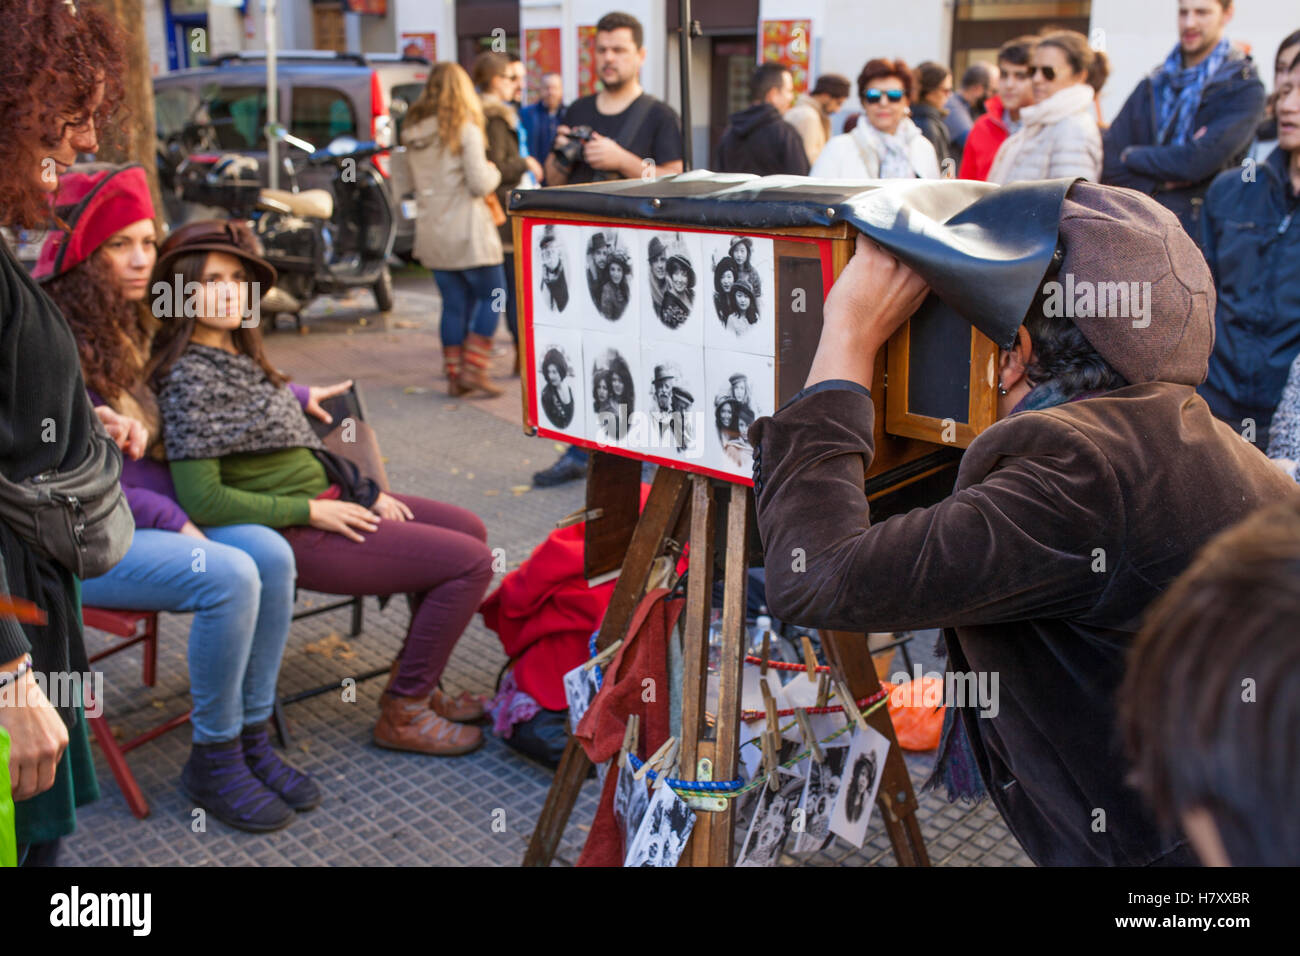 Madrid, Espagne - 6 novembre, 2016 : photographe de rue pour prendre des photos avec un appareil photo à la main vintage au marché aux puces El Rastro Banque D'Images